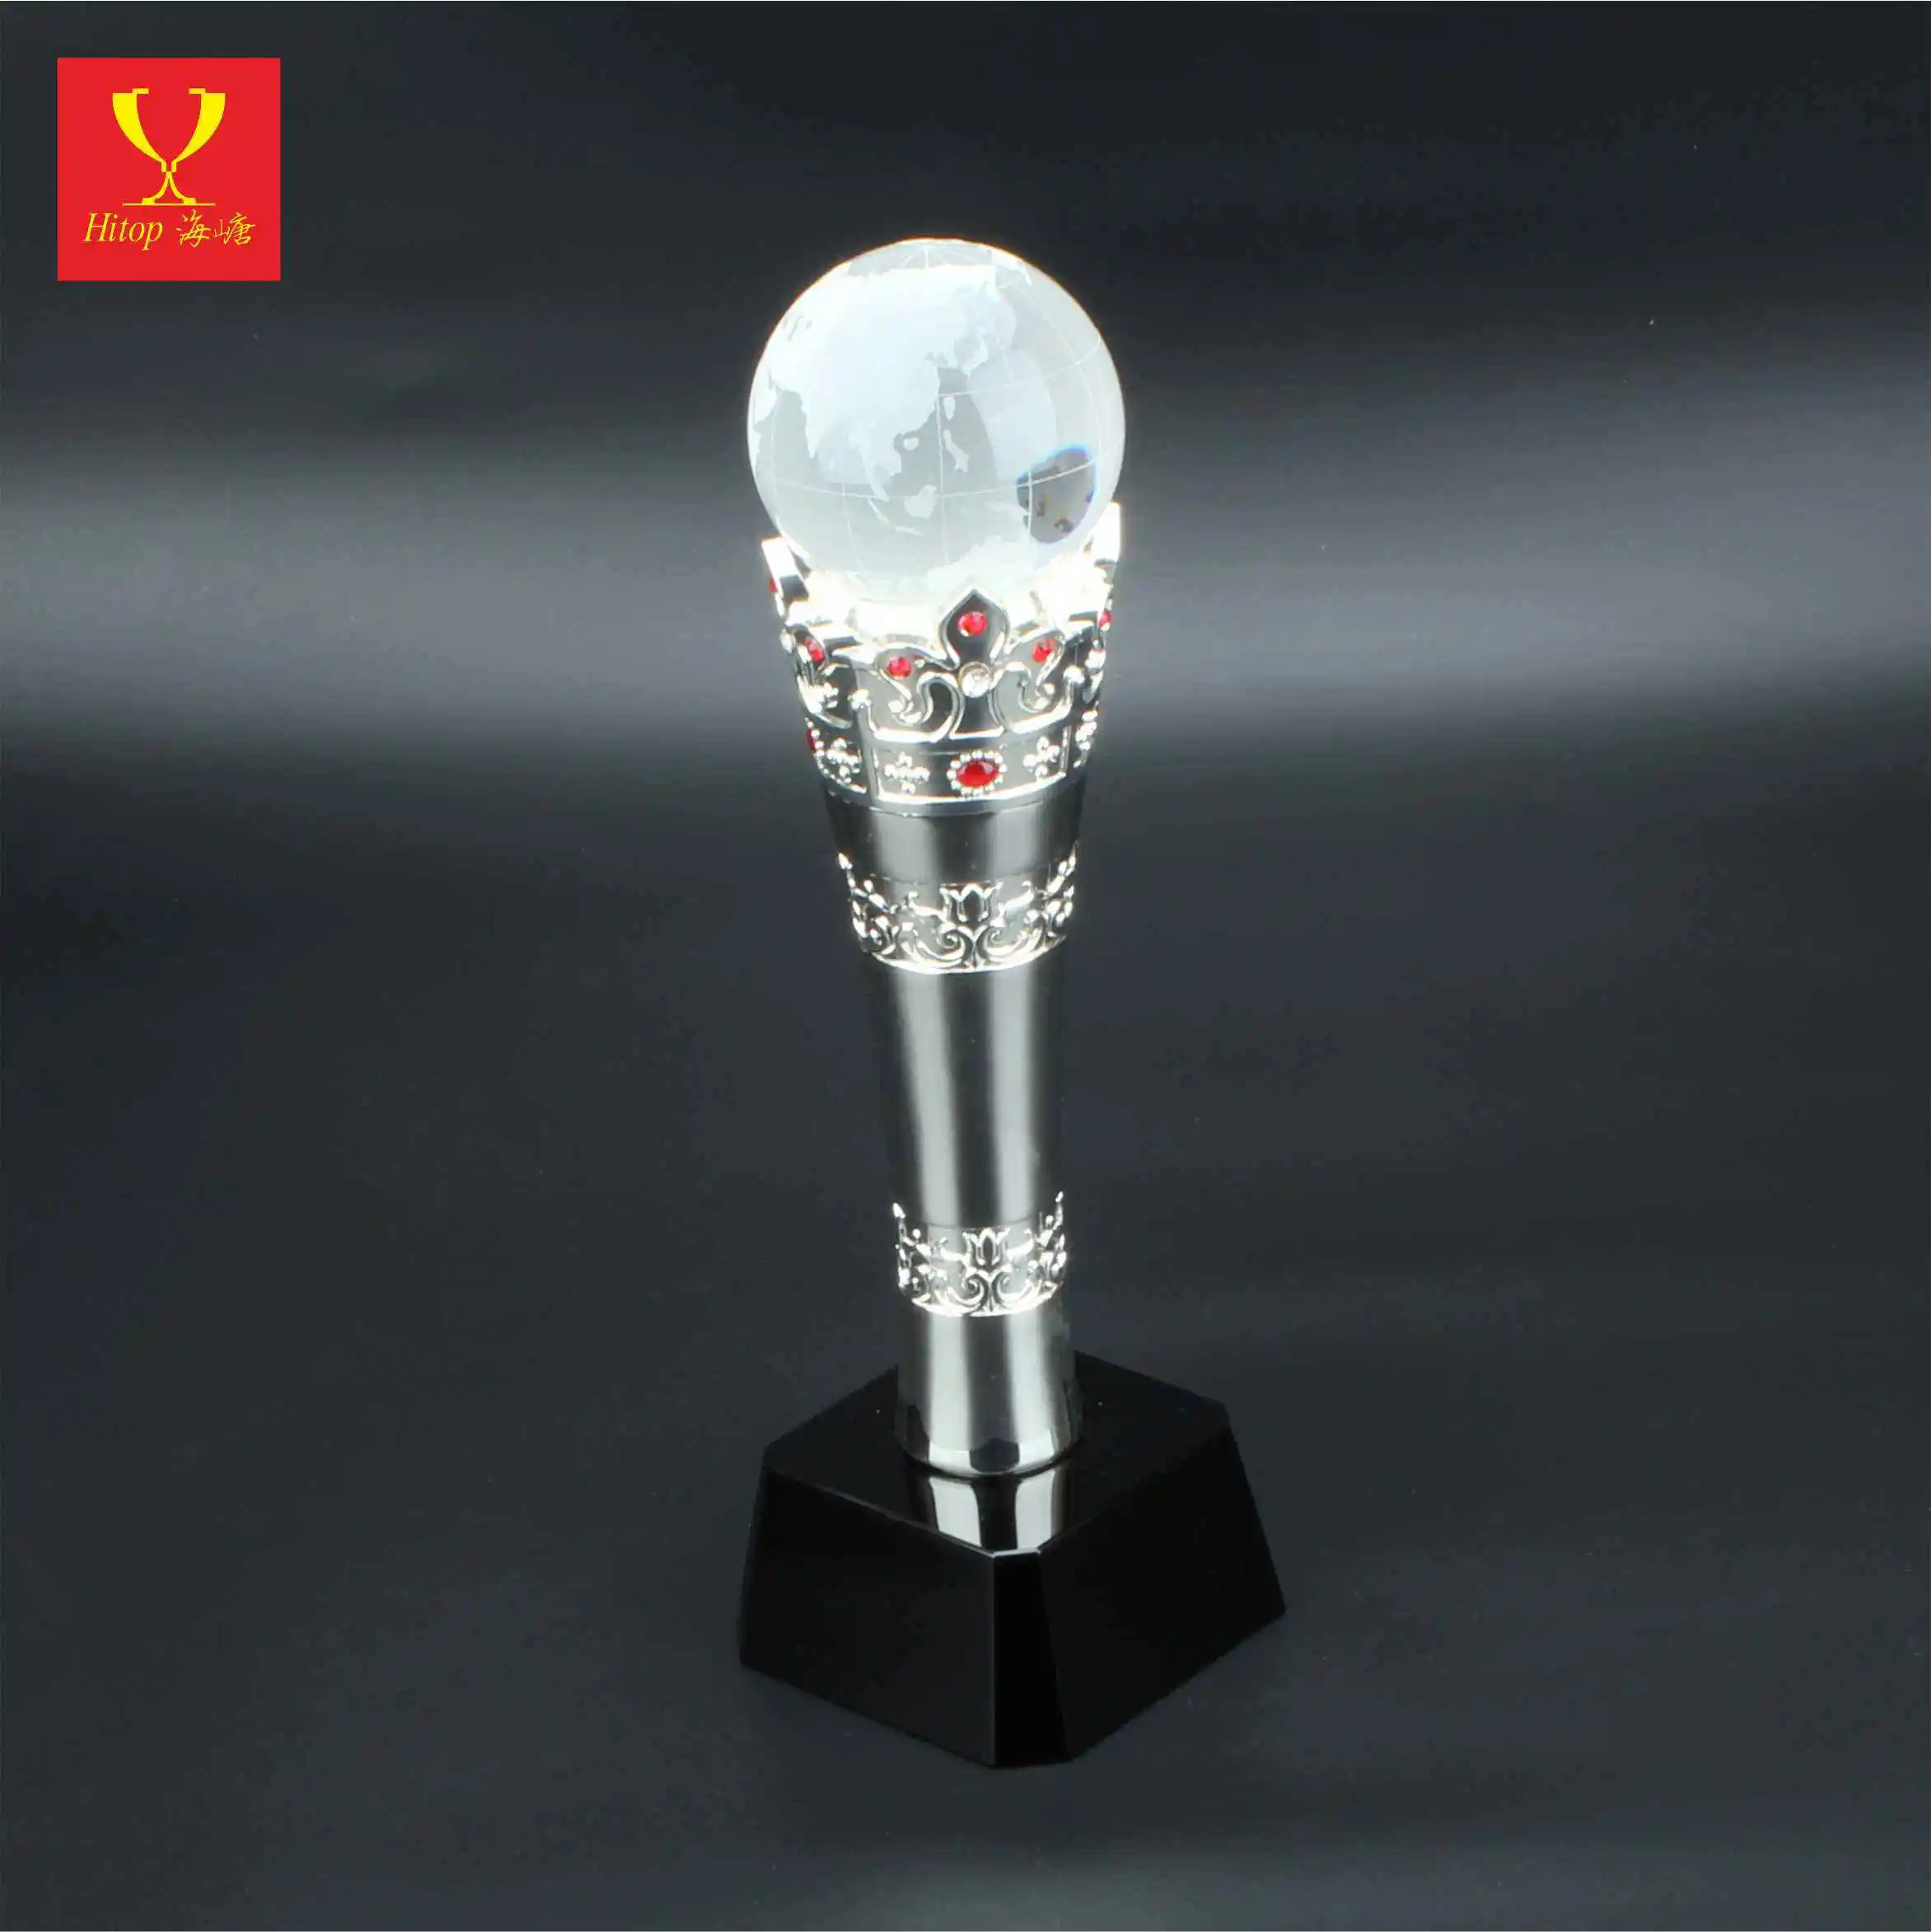 Hitop trofeo di smalto bianco personalizzato fatto a mano artigianato personalizzato cristallo artigianato premio scatola regalo di cristallo amore Europa Business regalo